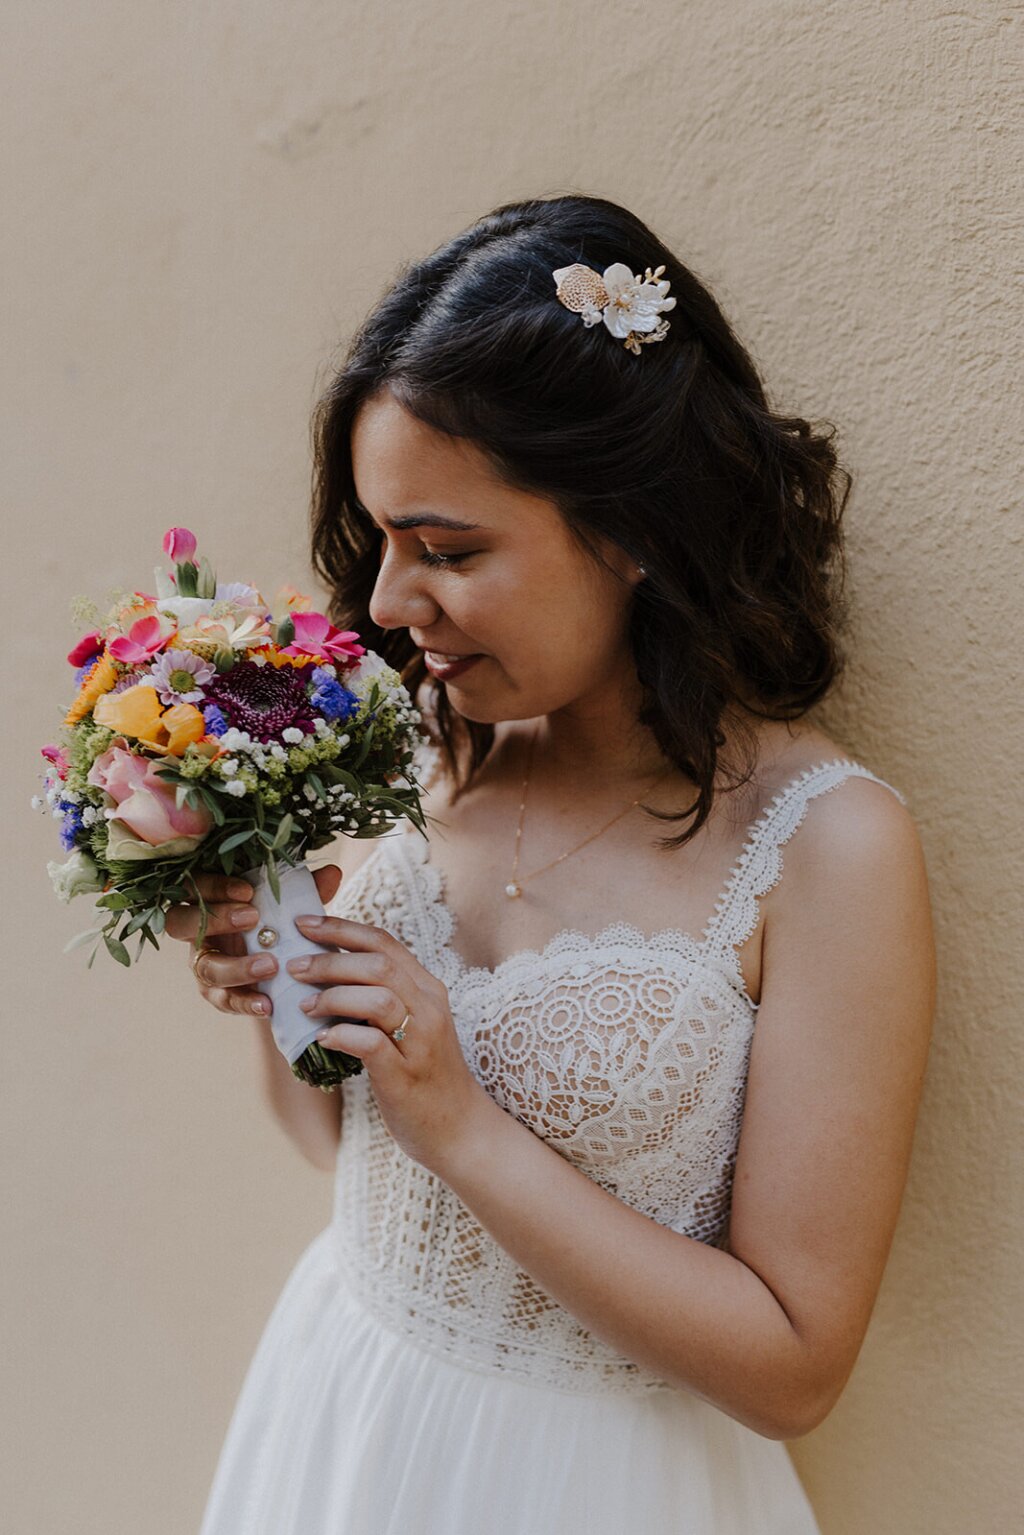 Eine Braut in einem weißen Kleid lehnt sich gegen eine beige Wand und riecht an ihrem bunten Brautstrauß. Sie trägt eine schöne goldene Spange in ihren schwarzen Haaren.